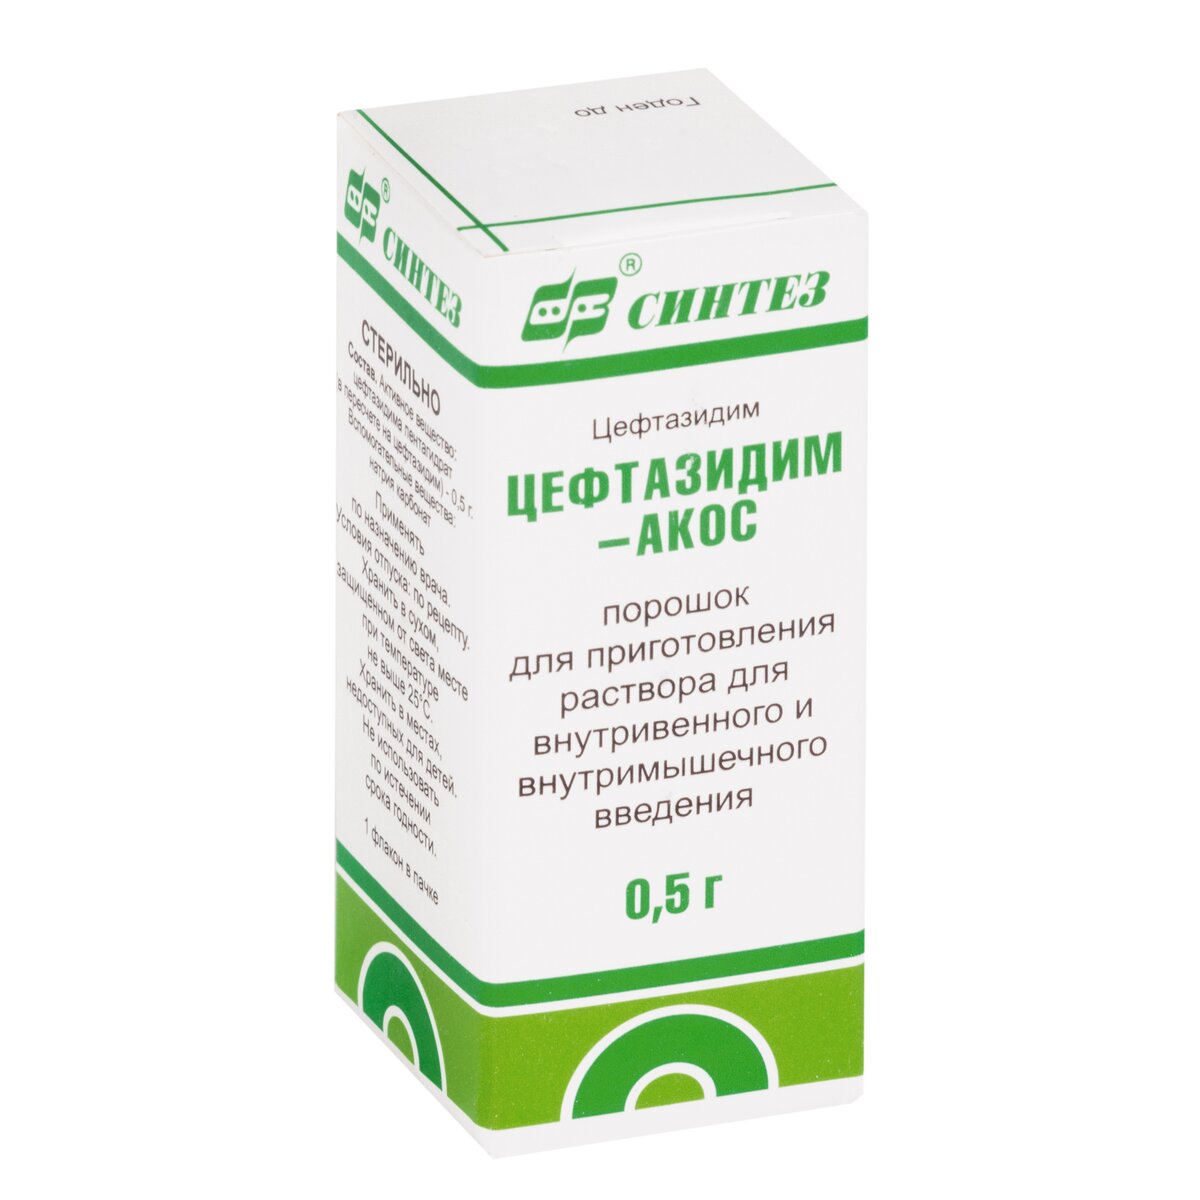 Цефтазидим-АКОС 0,5 г флакон 1 шт. порошок для приготовления раствора для внутривенного и внутримышечного введения